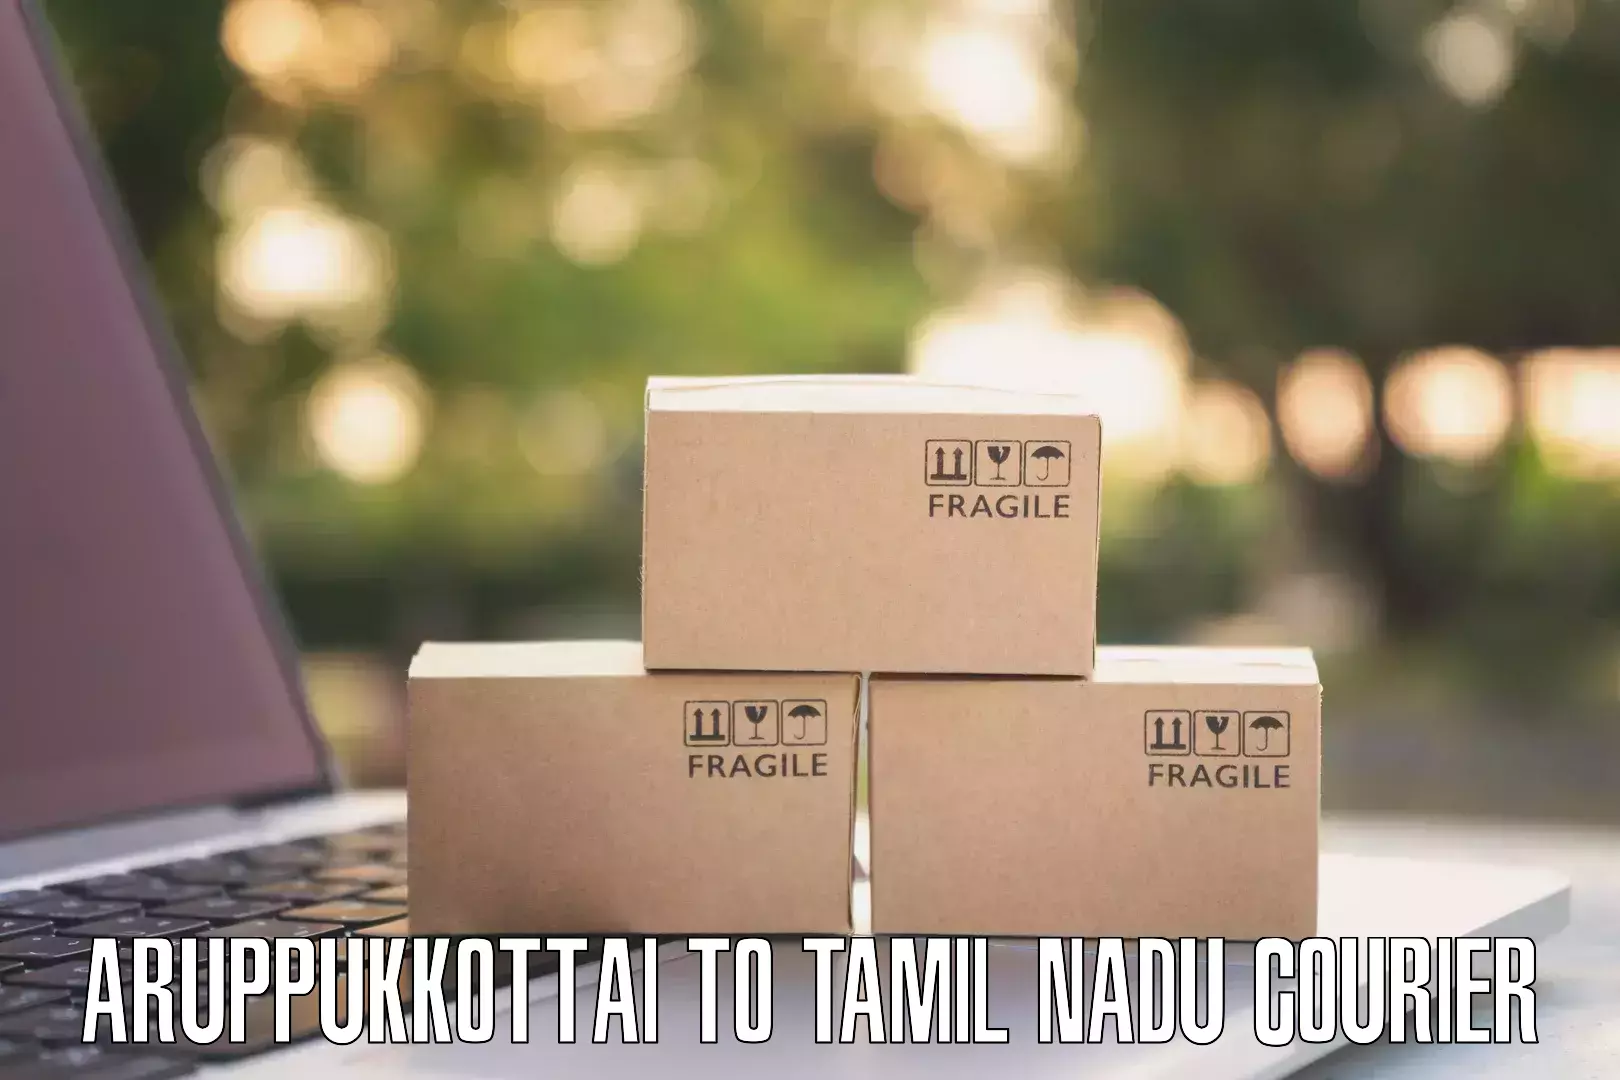 Next-generation courier services Aruppukkottai to Gobichettipalayam